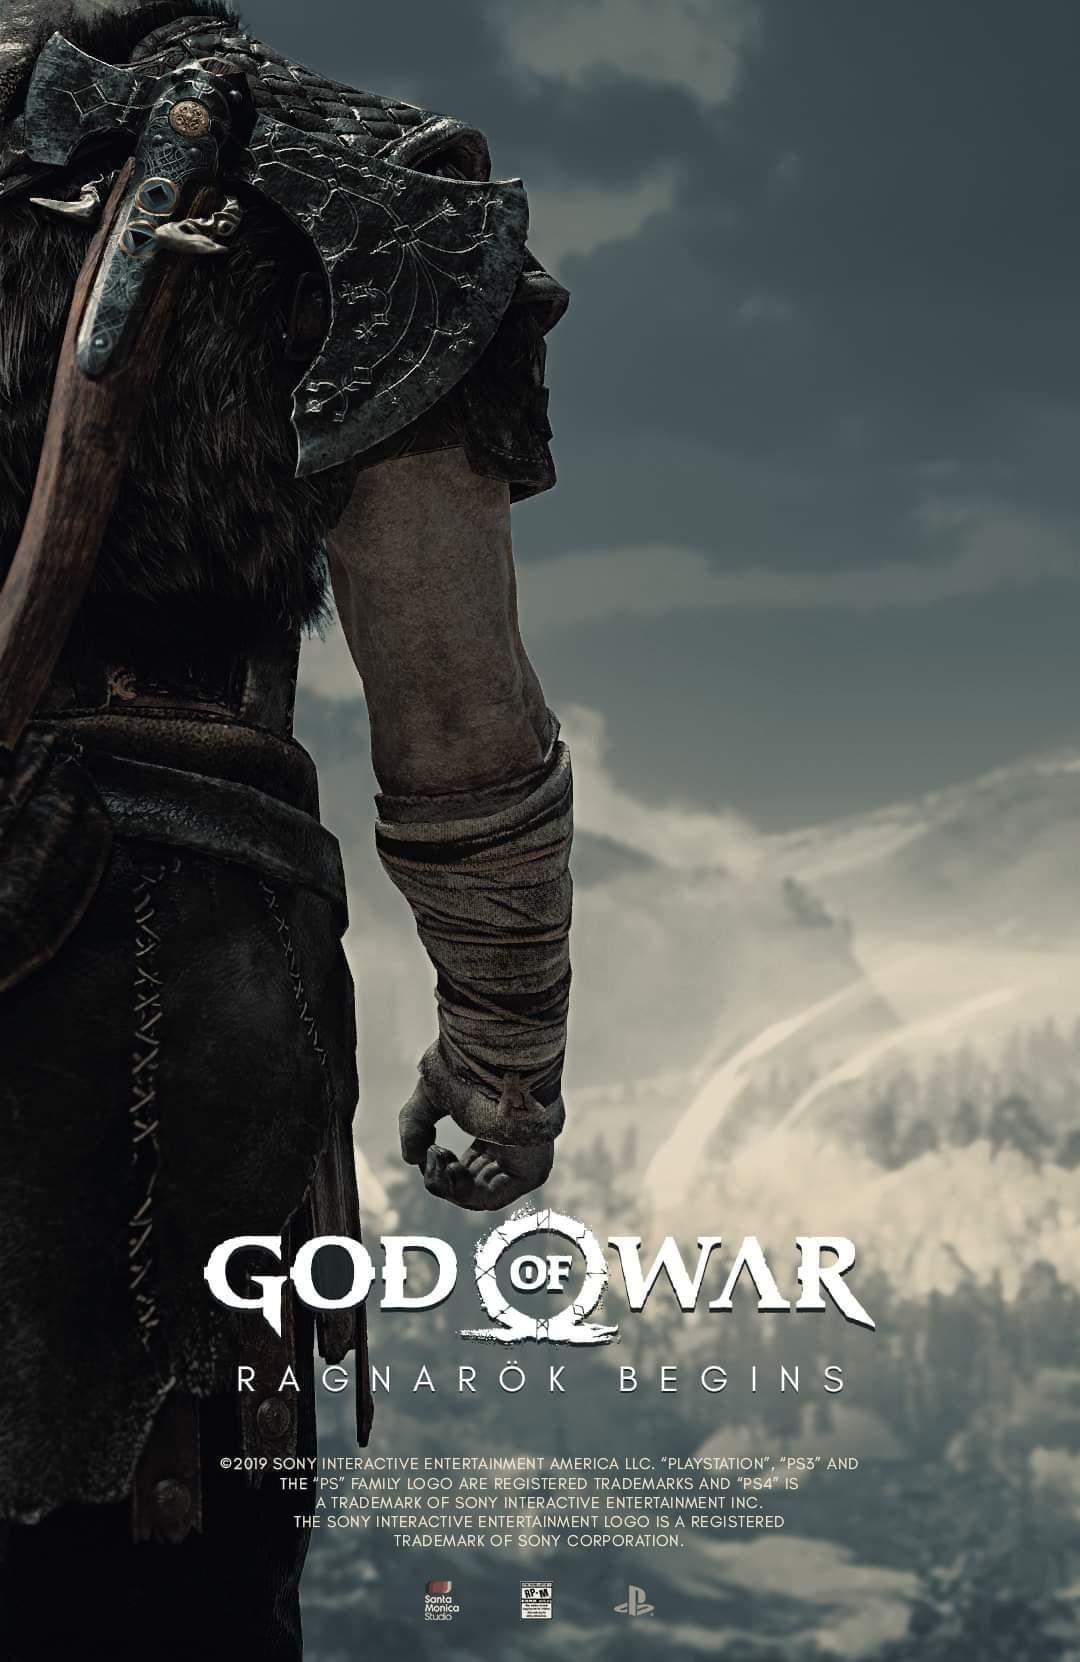 download god of war 5 ragnarok for free